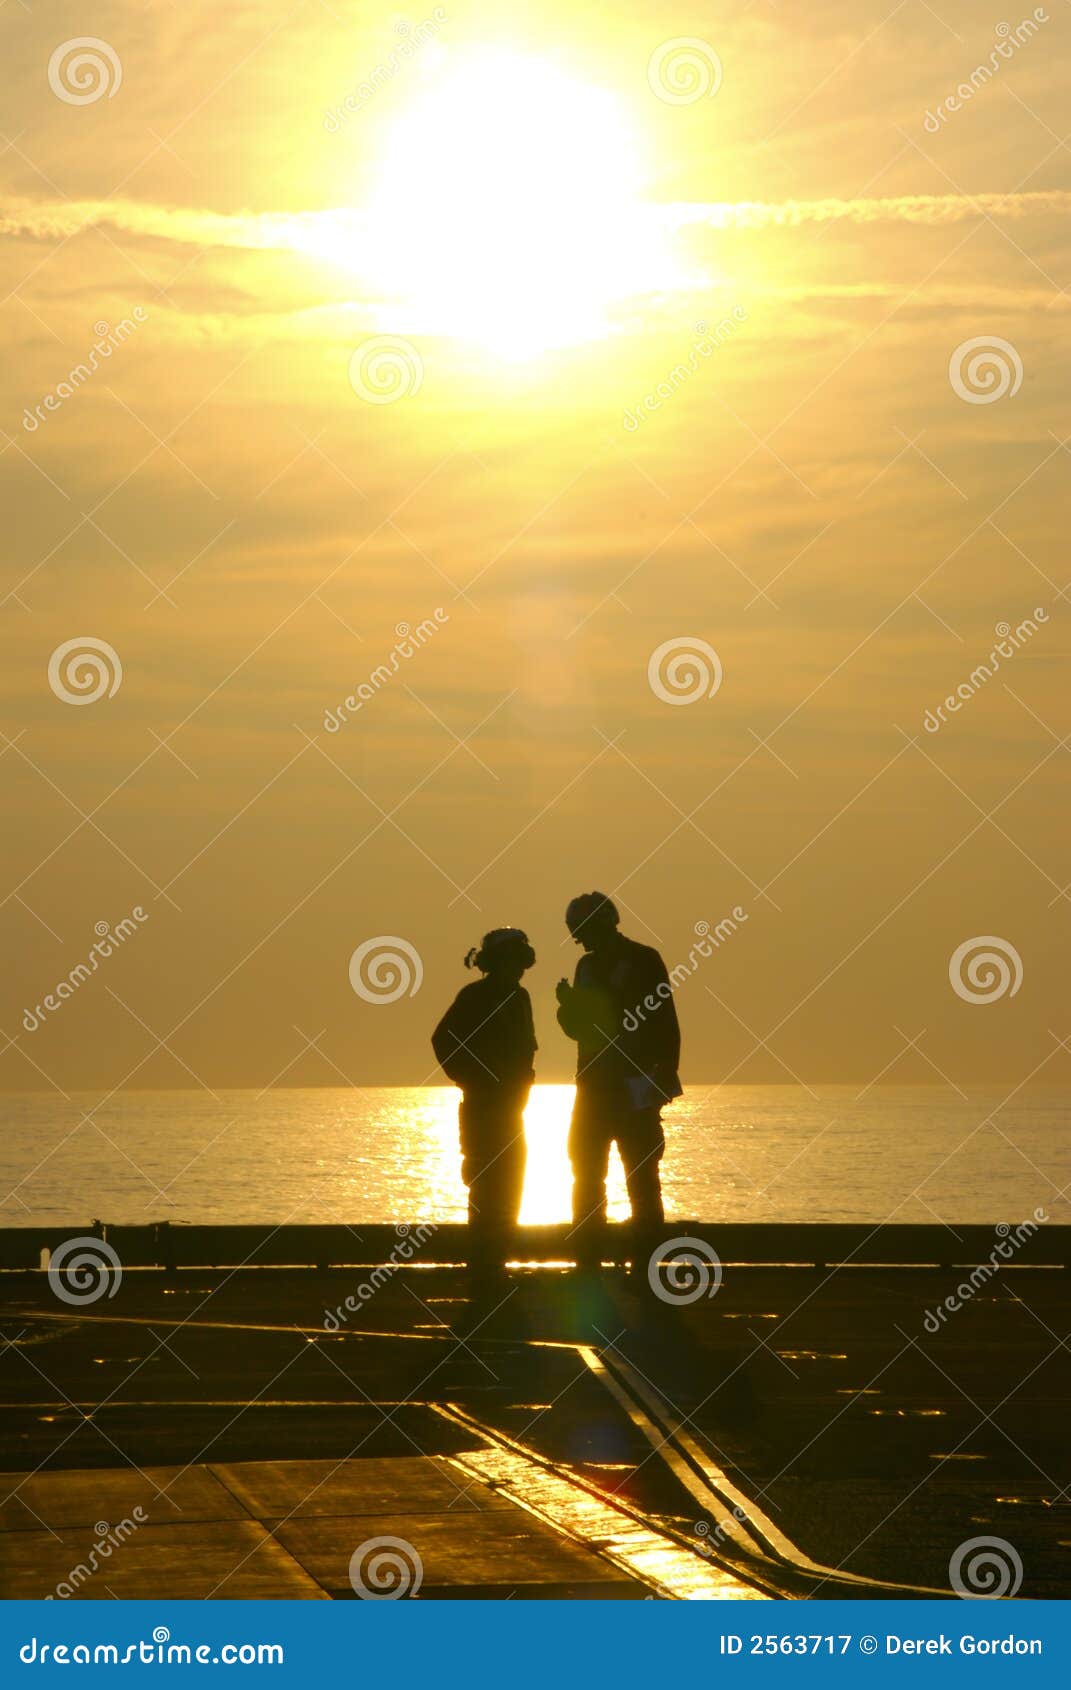 sailors at sunset